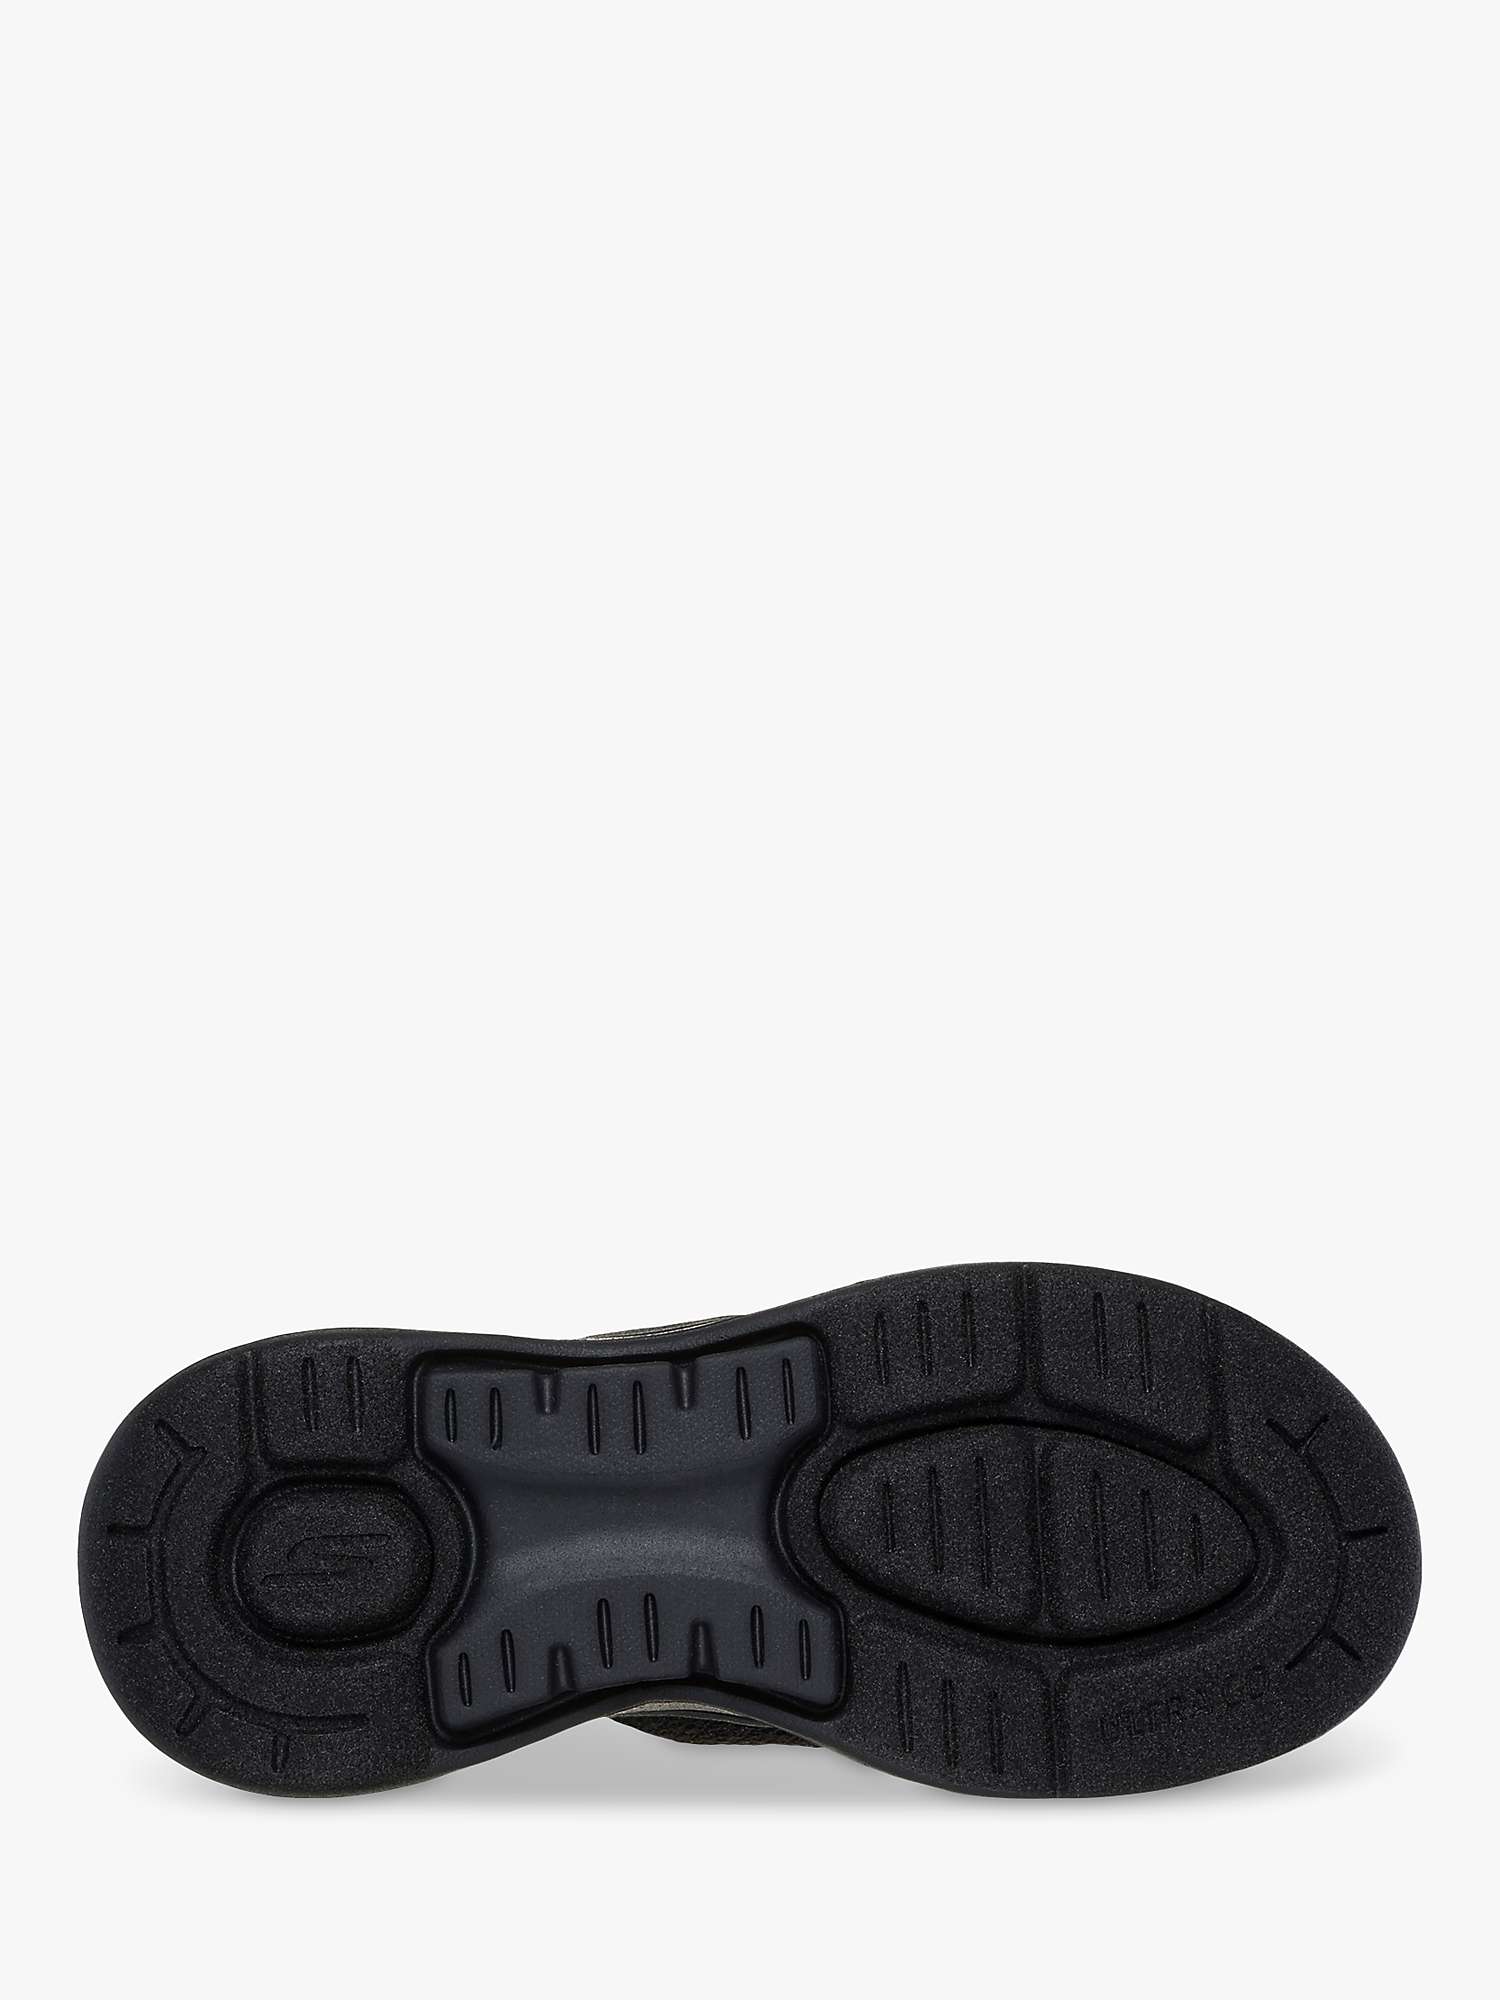 Buy Skechers Go Walk Arch Fit Sandal Spellbound Sandal, Black Online at johnlewis.com